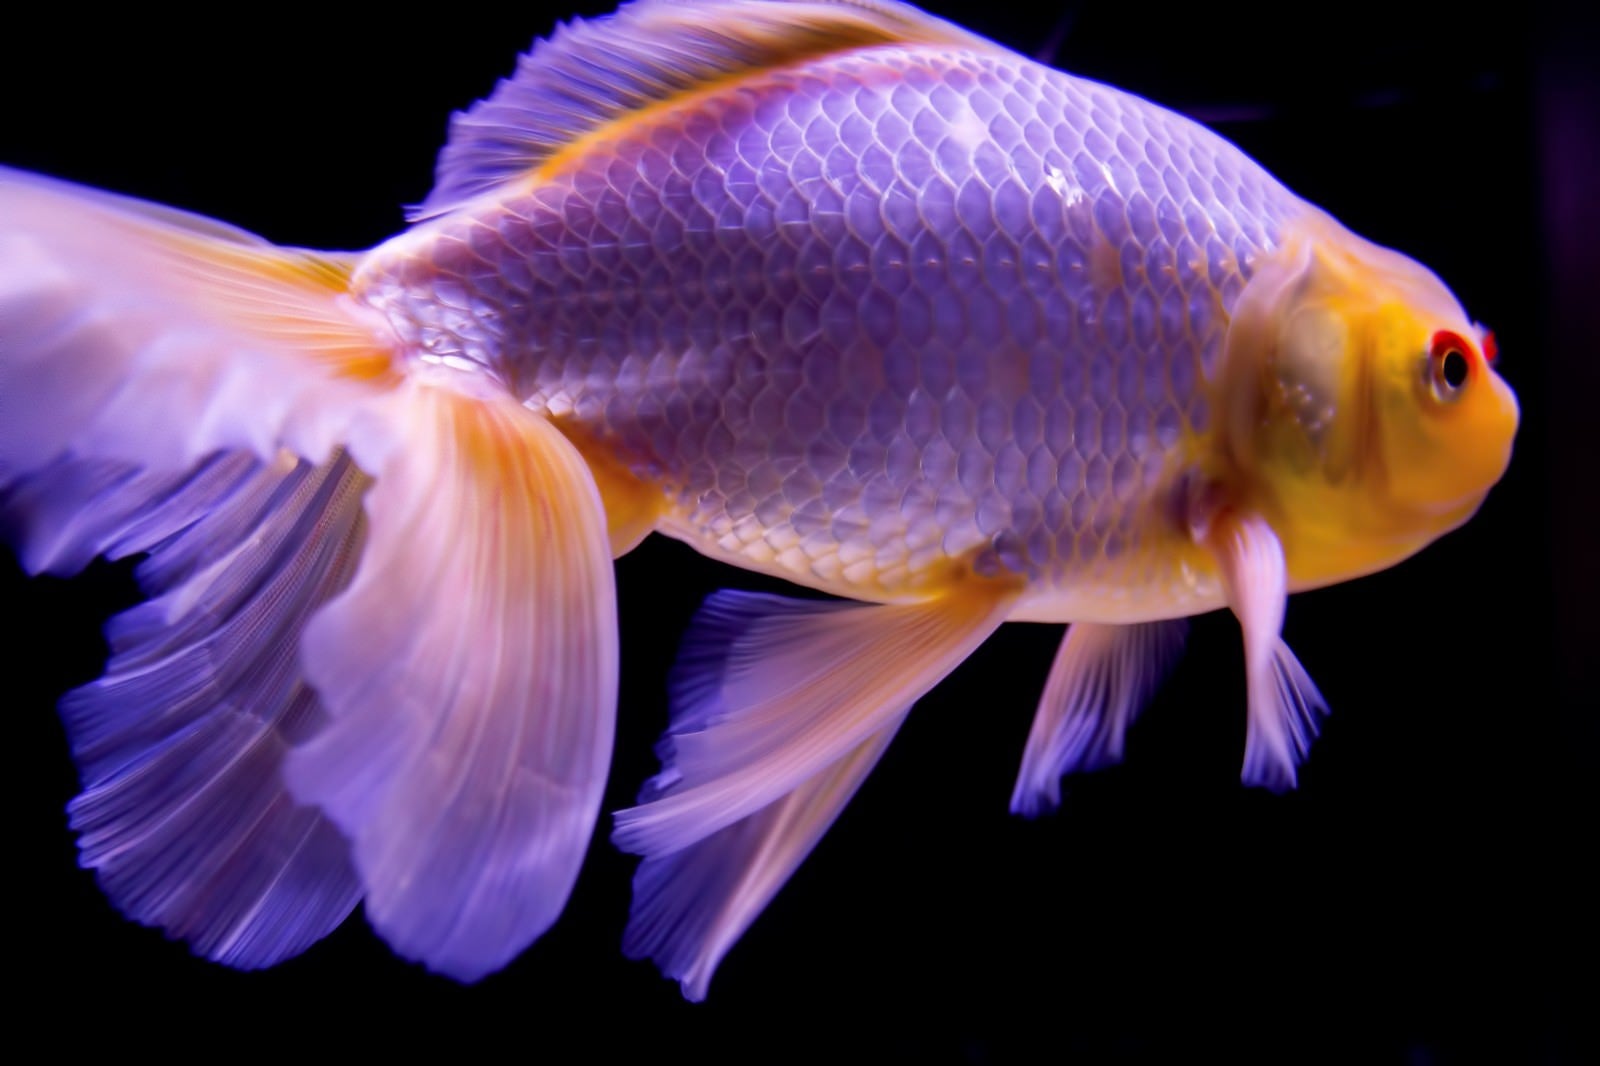 「尾びれが素敵な金魚」の写真